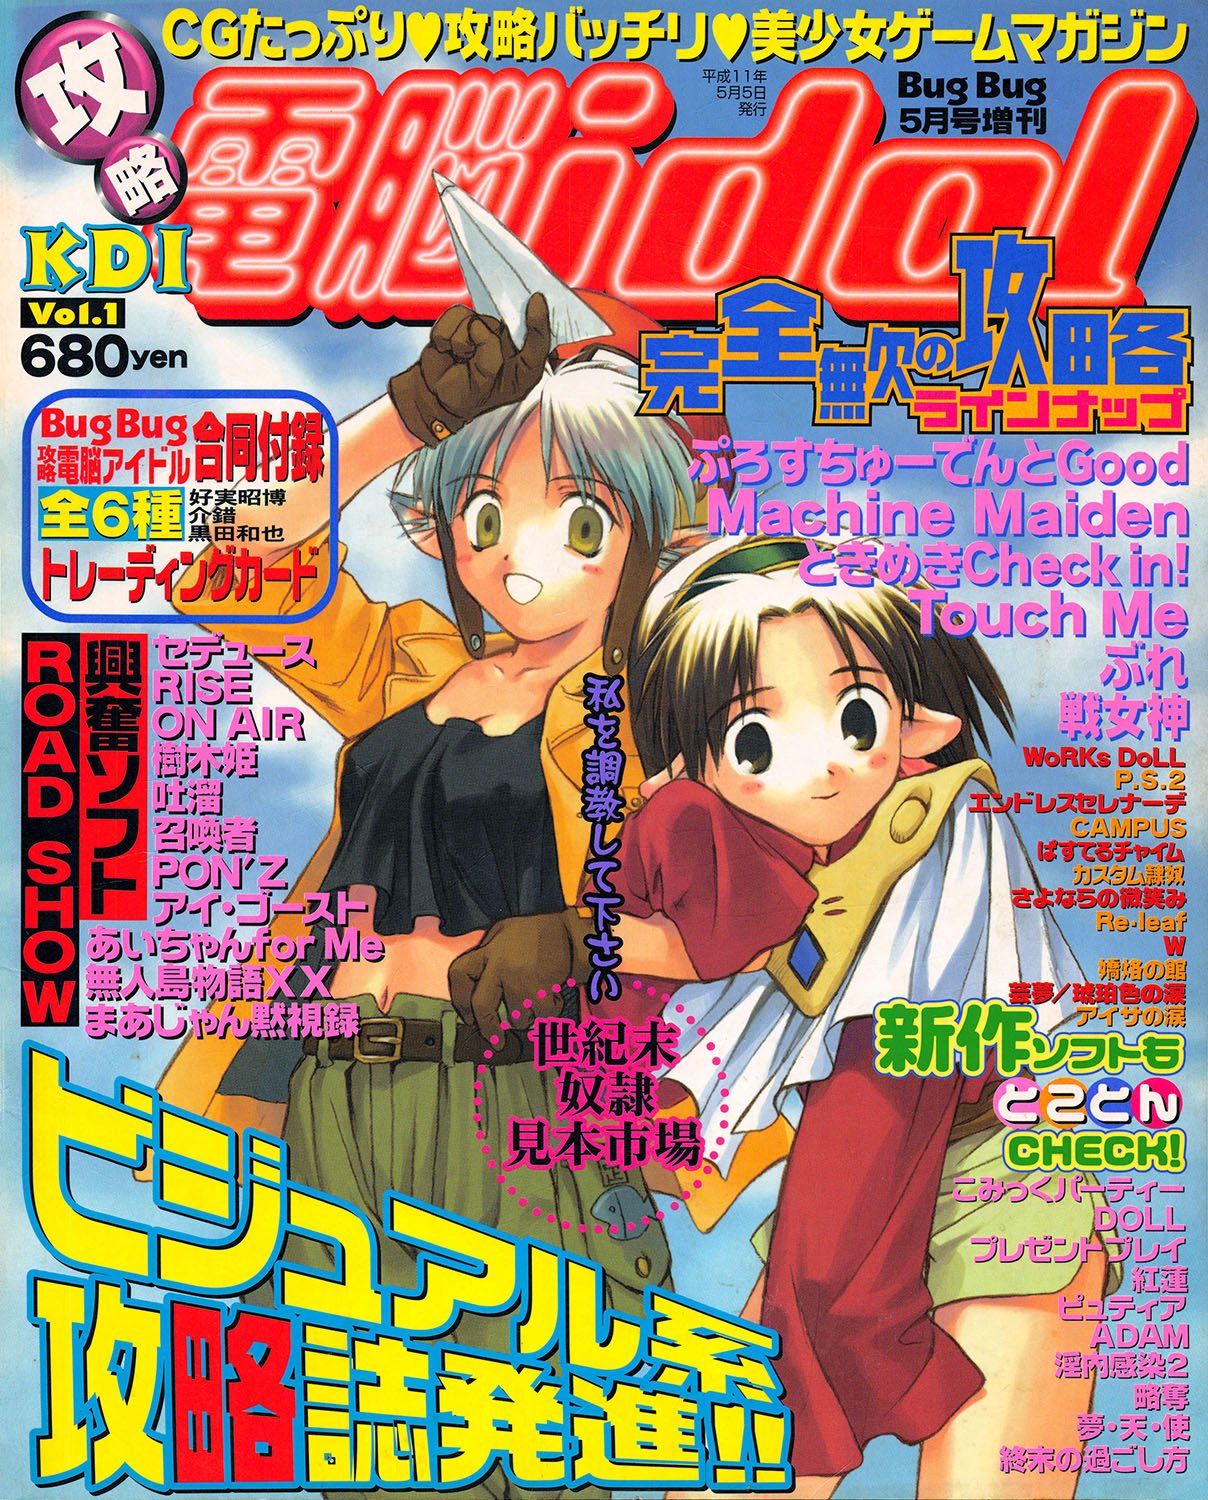 Kouryaku Dennou idol Vol.1 (May 1999)